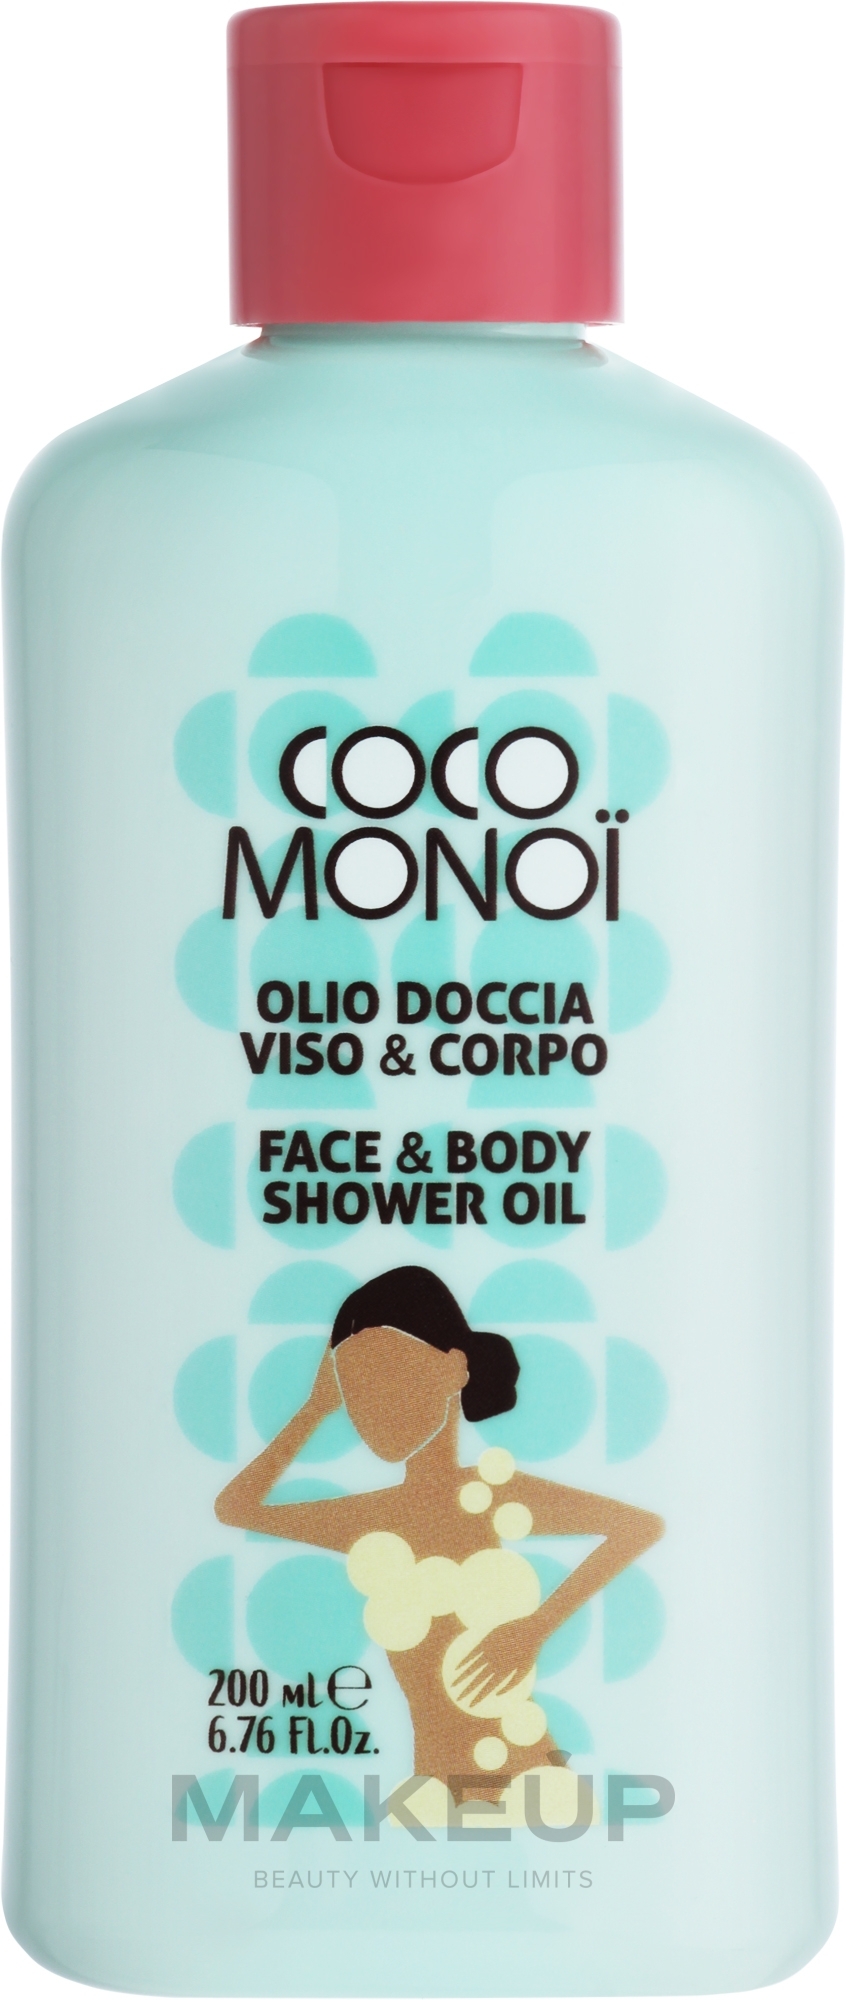 Очищувальна олія для обличчя й тіла - Coco Monoi Face & Body Shower Oil — фото 200ml